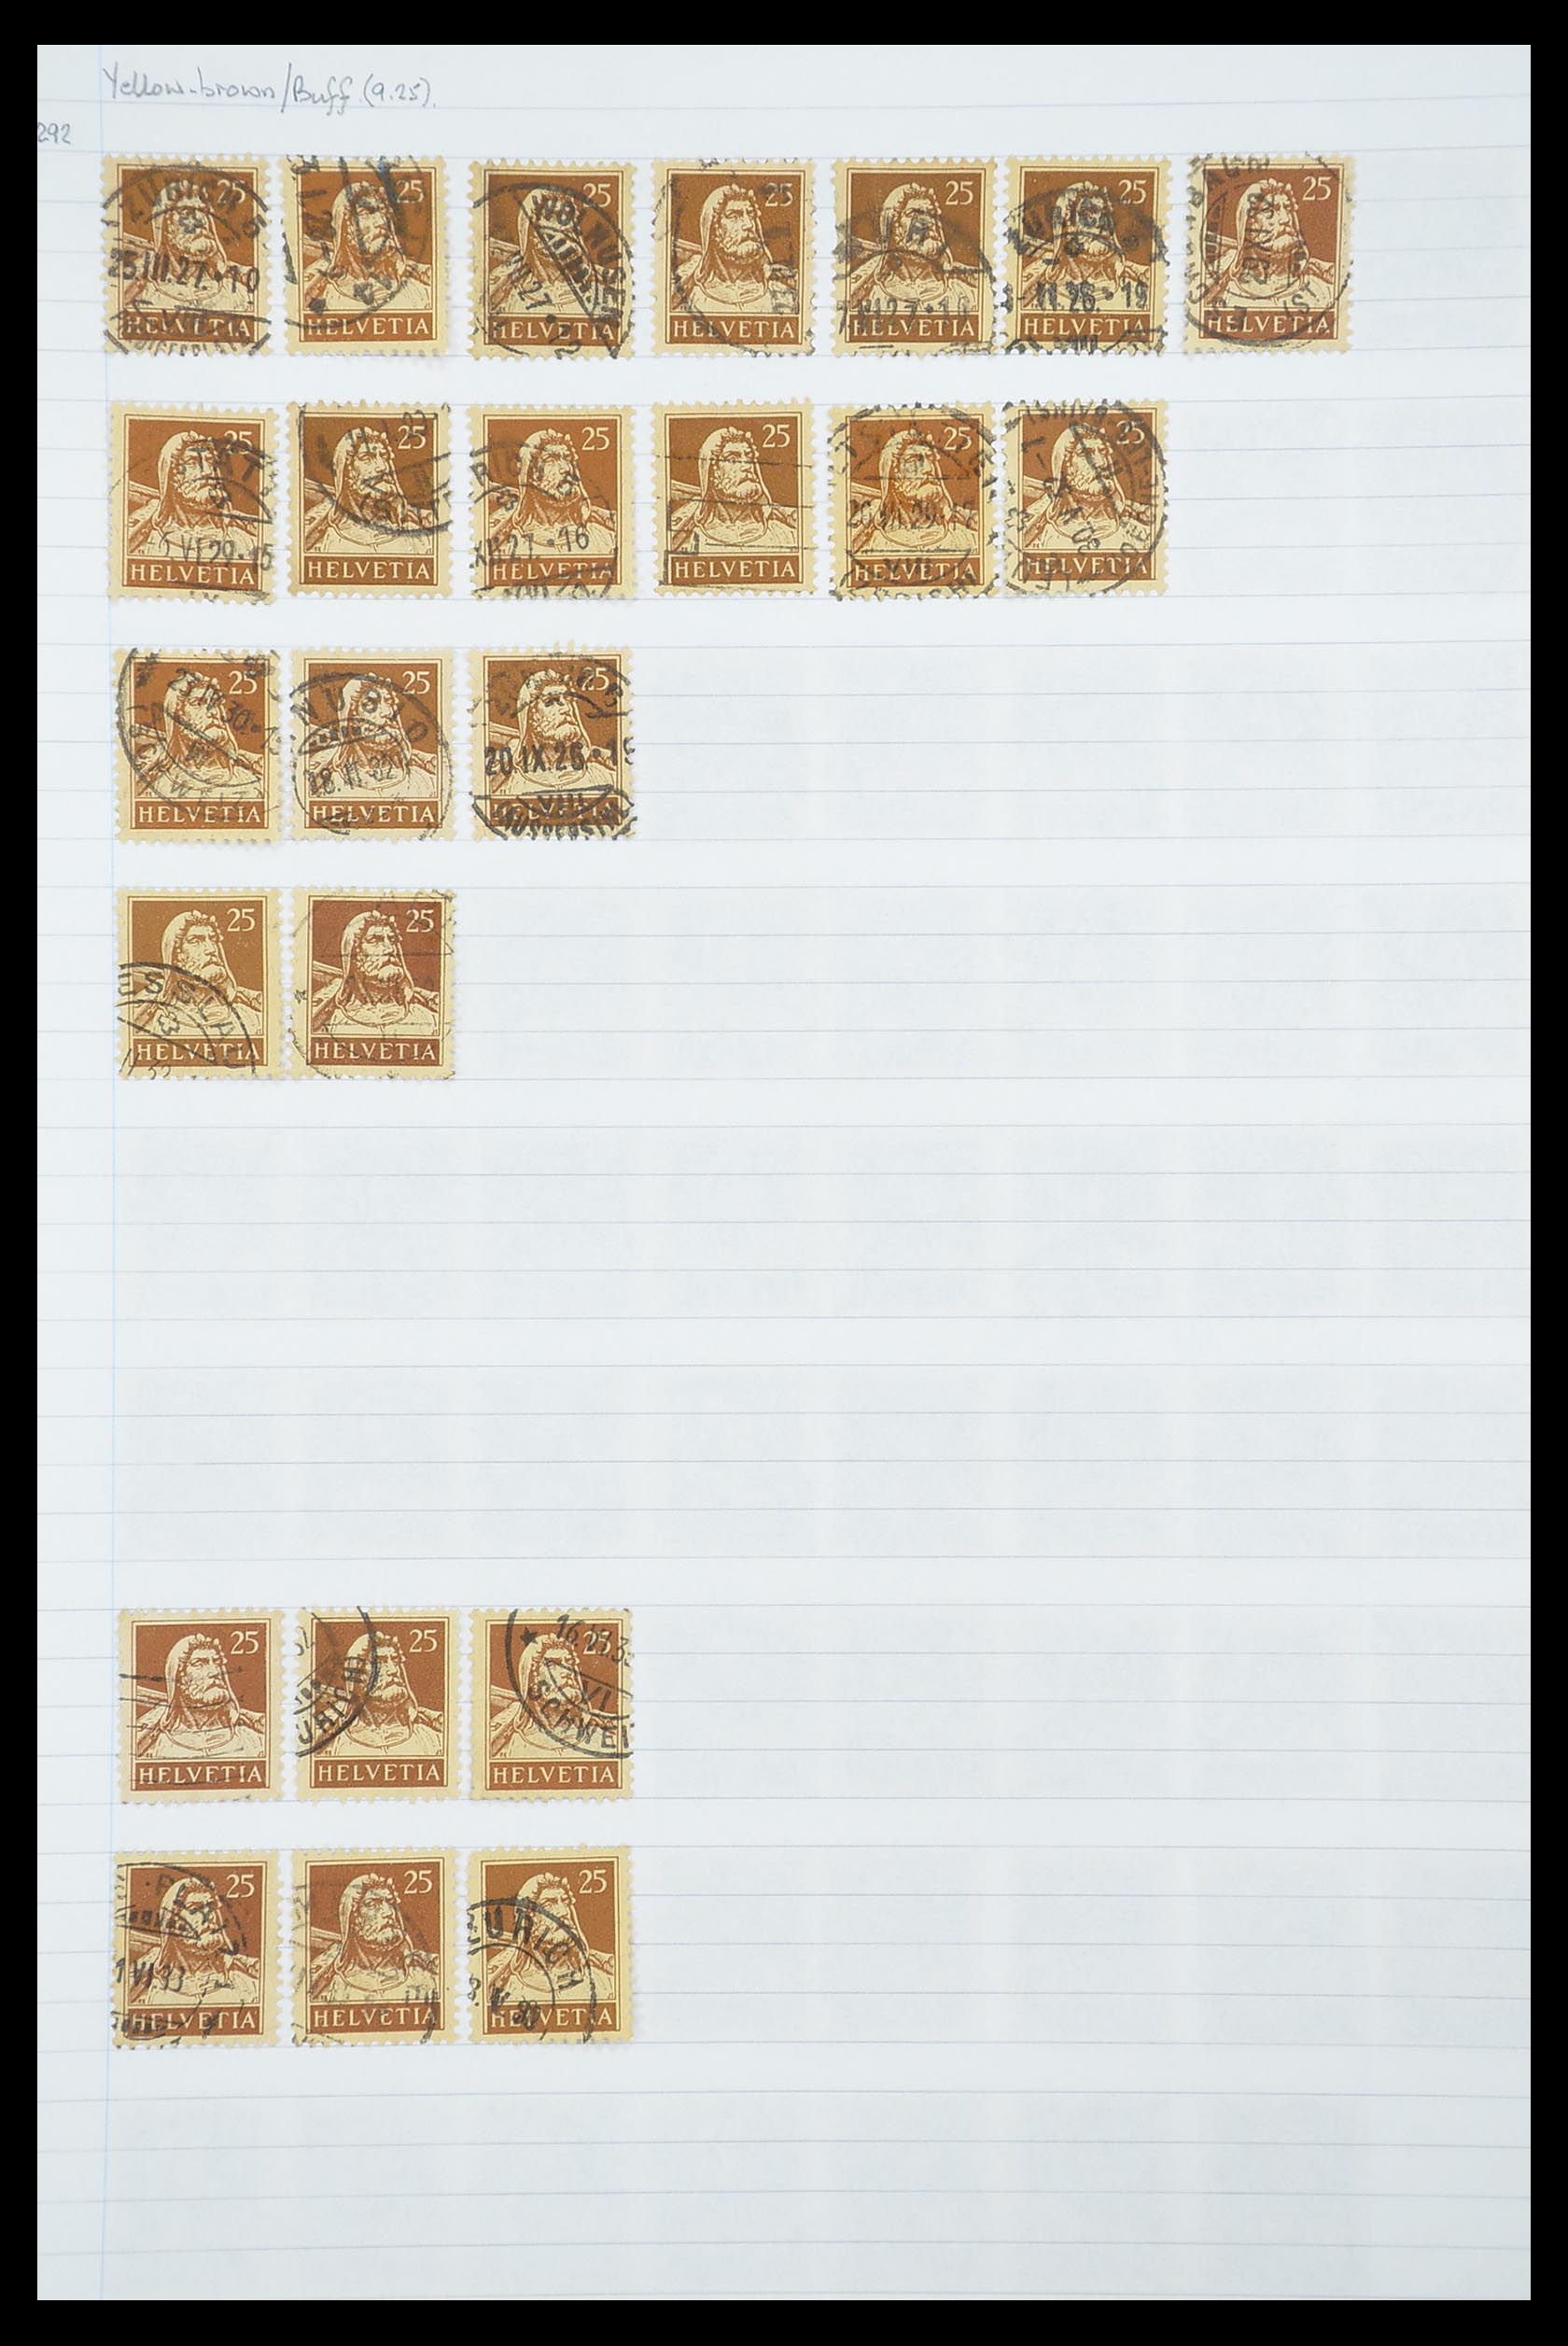 33926 388 - Postzegelverzameling 33926 Zwitserland uitzoekpartij 1850-1997.